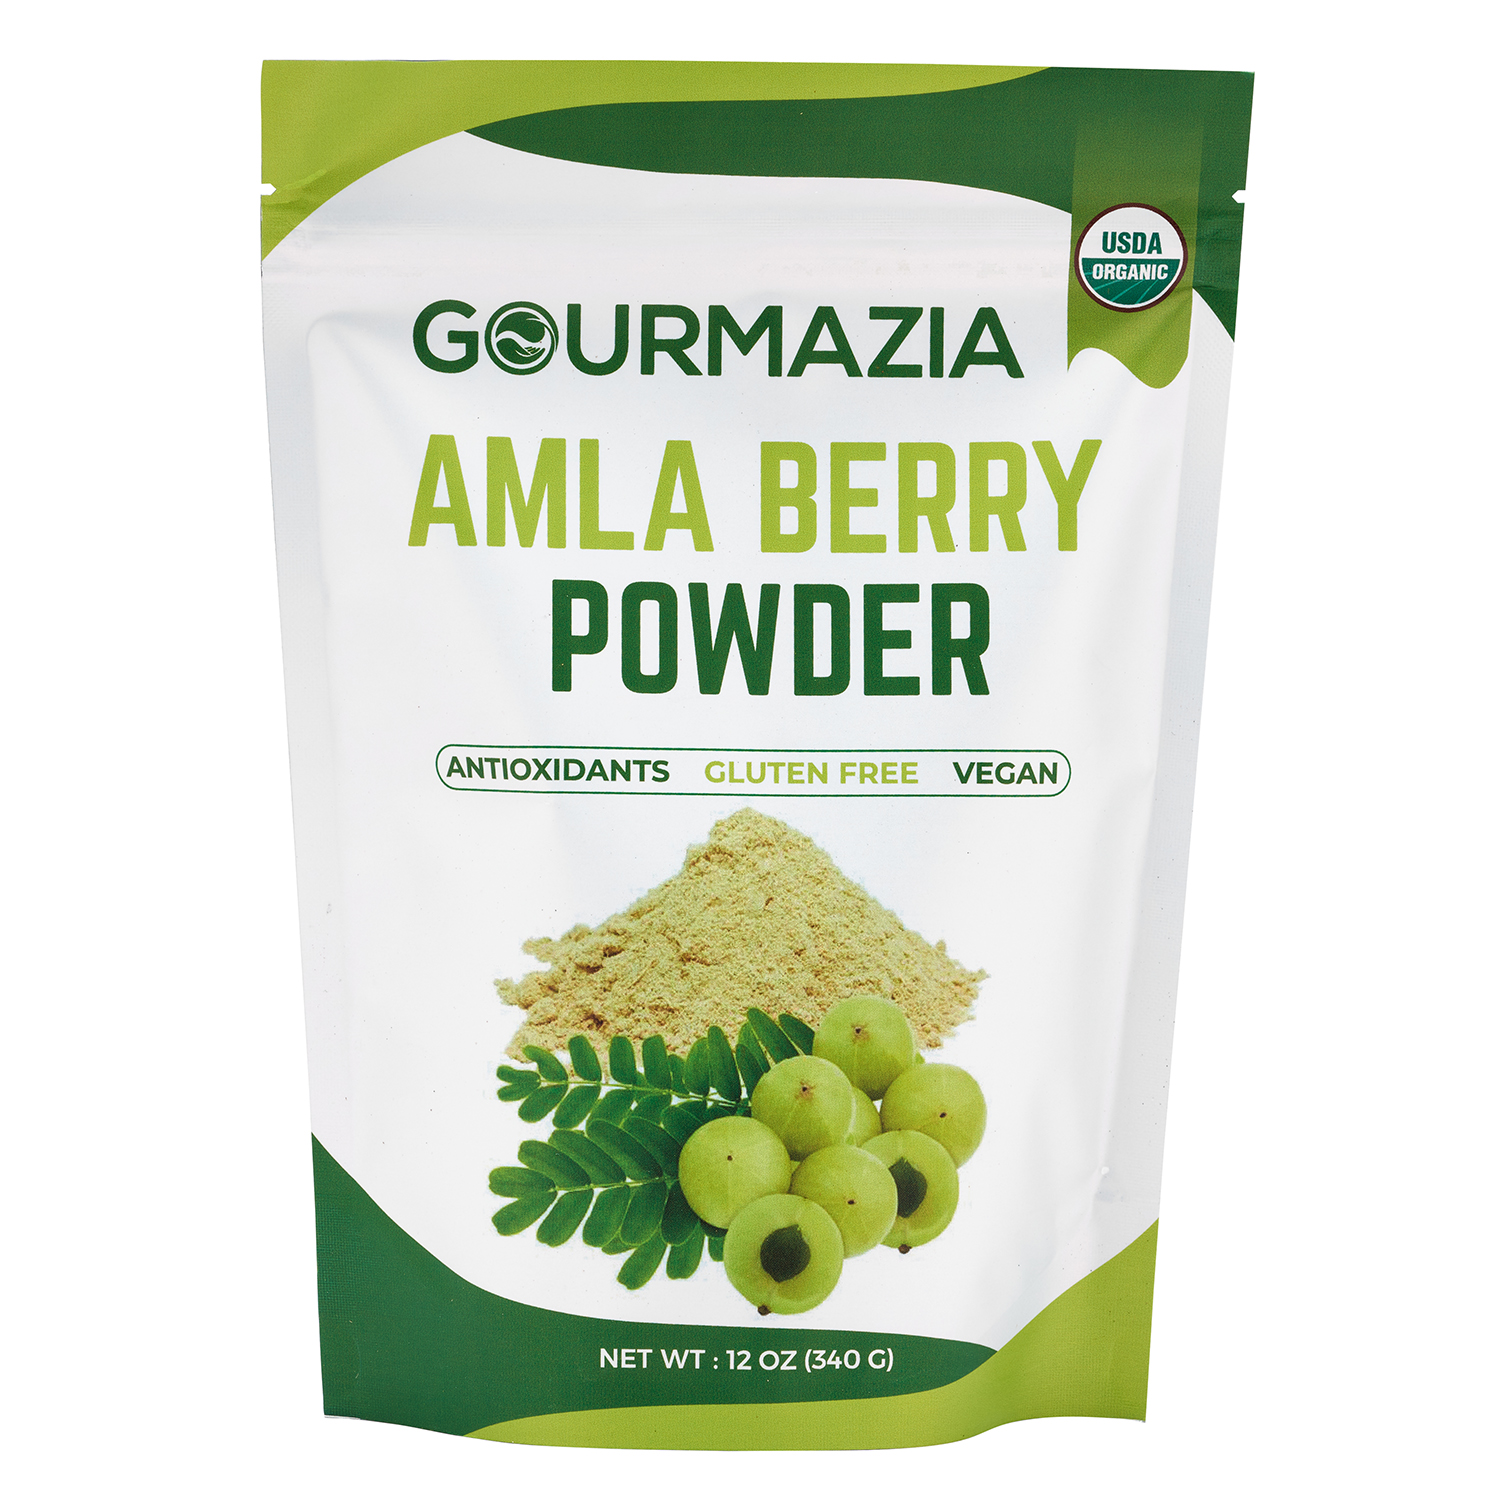 มะขามป้อมผงธรรมชาติ Amla Powder (Amalaki), 340g USDA organic Ayurvedic Herbal Superfood Rich in Vitamin C and Antioxidants,